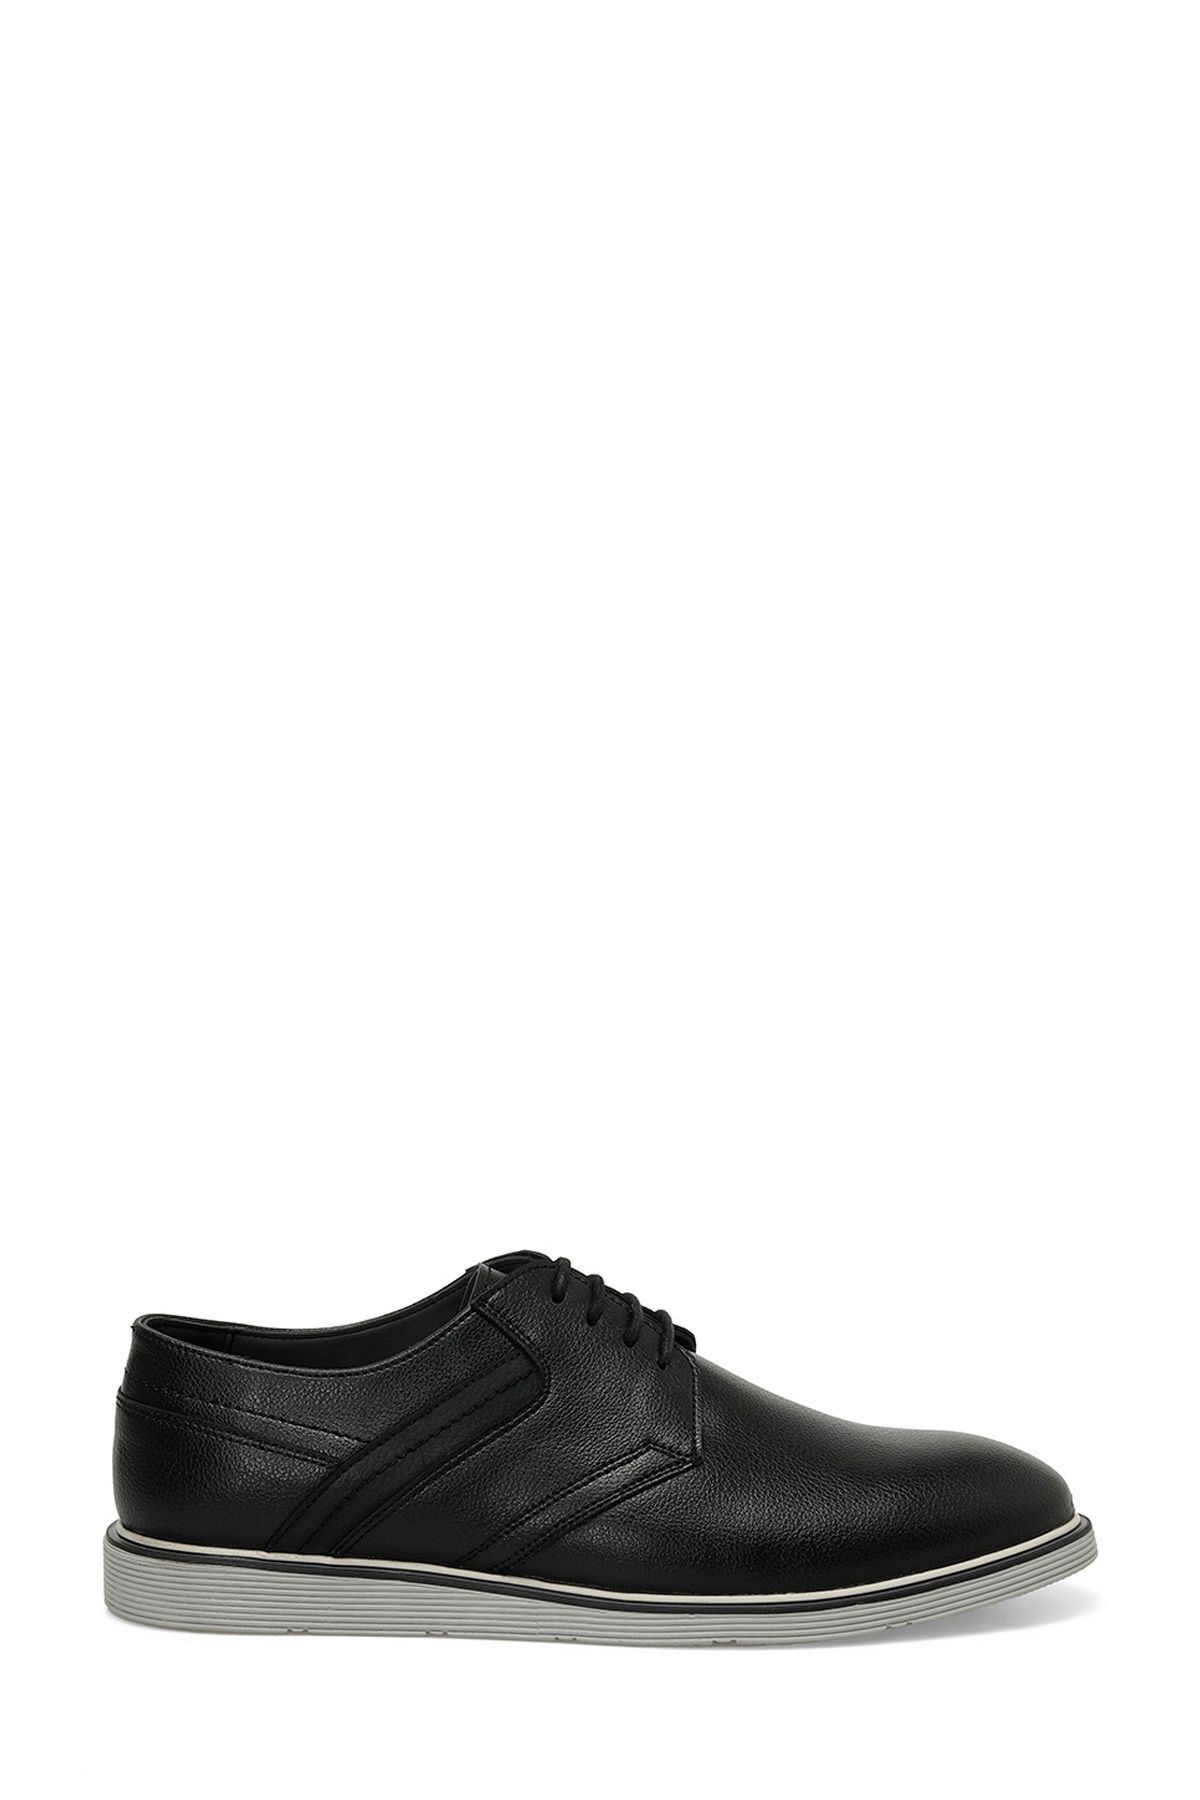 JJ-STILLER BENU-1 4FX Siyah Erkek Klasik Ayakkabı